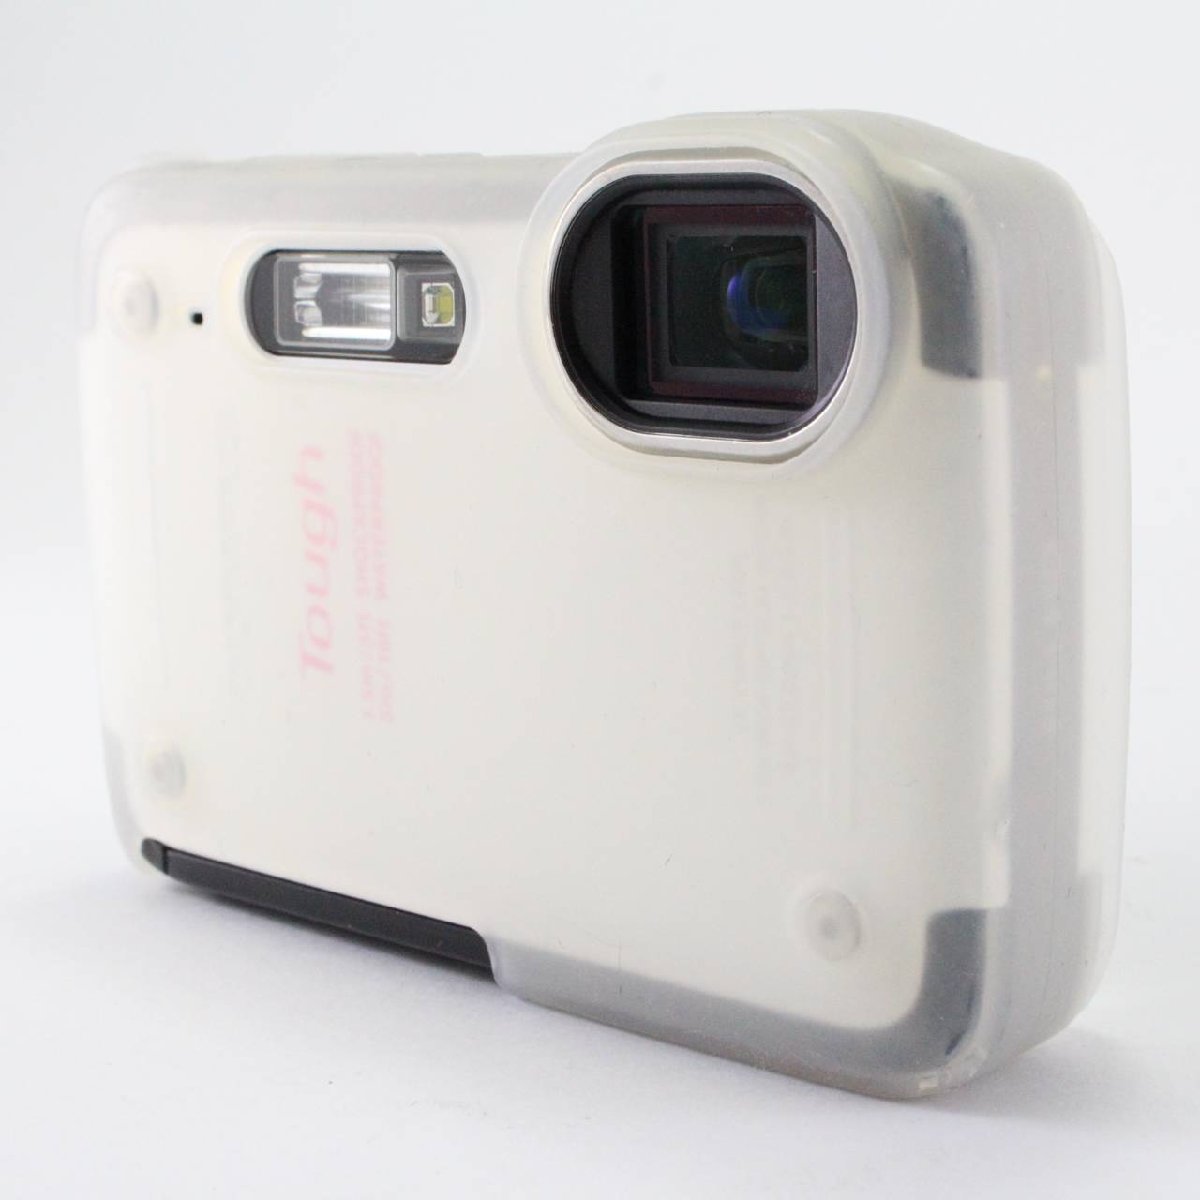 OLYMPUS デジタルカメラ TG-620 1200万画素 5m防水 裏面照射型CMOS 広角28mm ホワイト TG-620 WHT